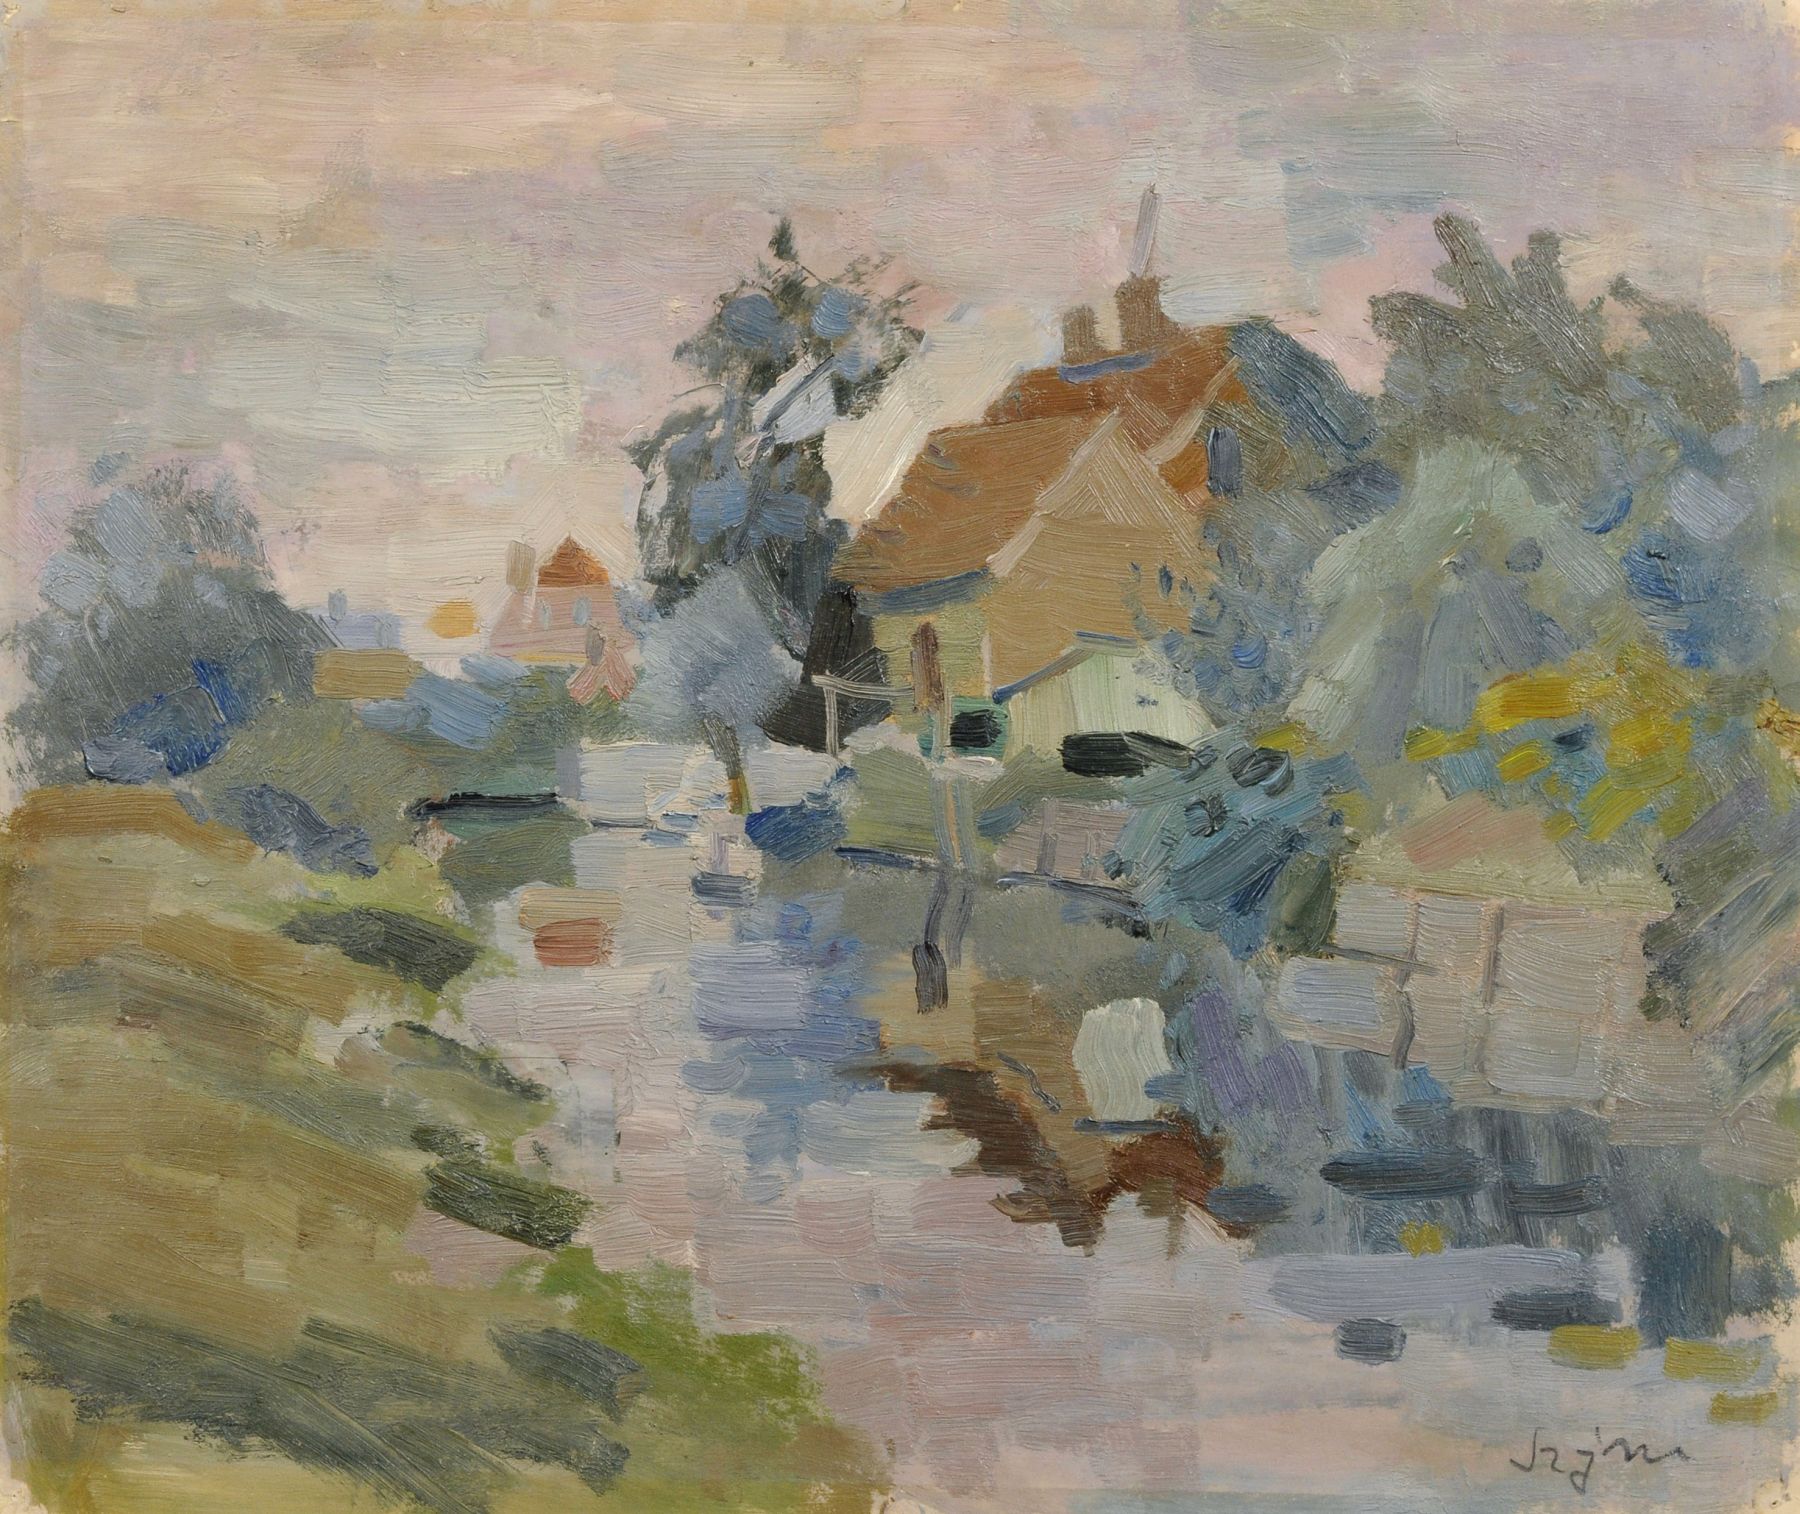 Hans Szym, Abendliche Landschaft mit Flußlauf und Häusern. 1930's.  Oil on paper. In Blei